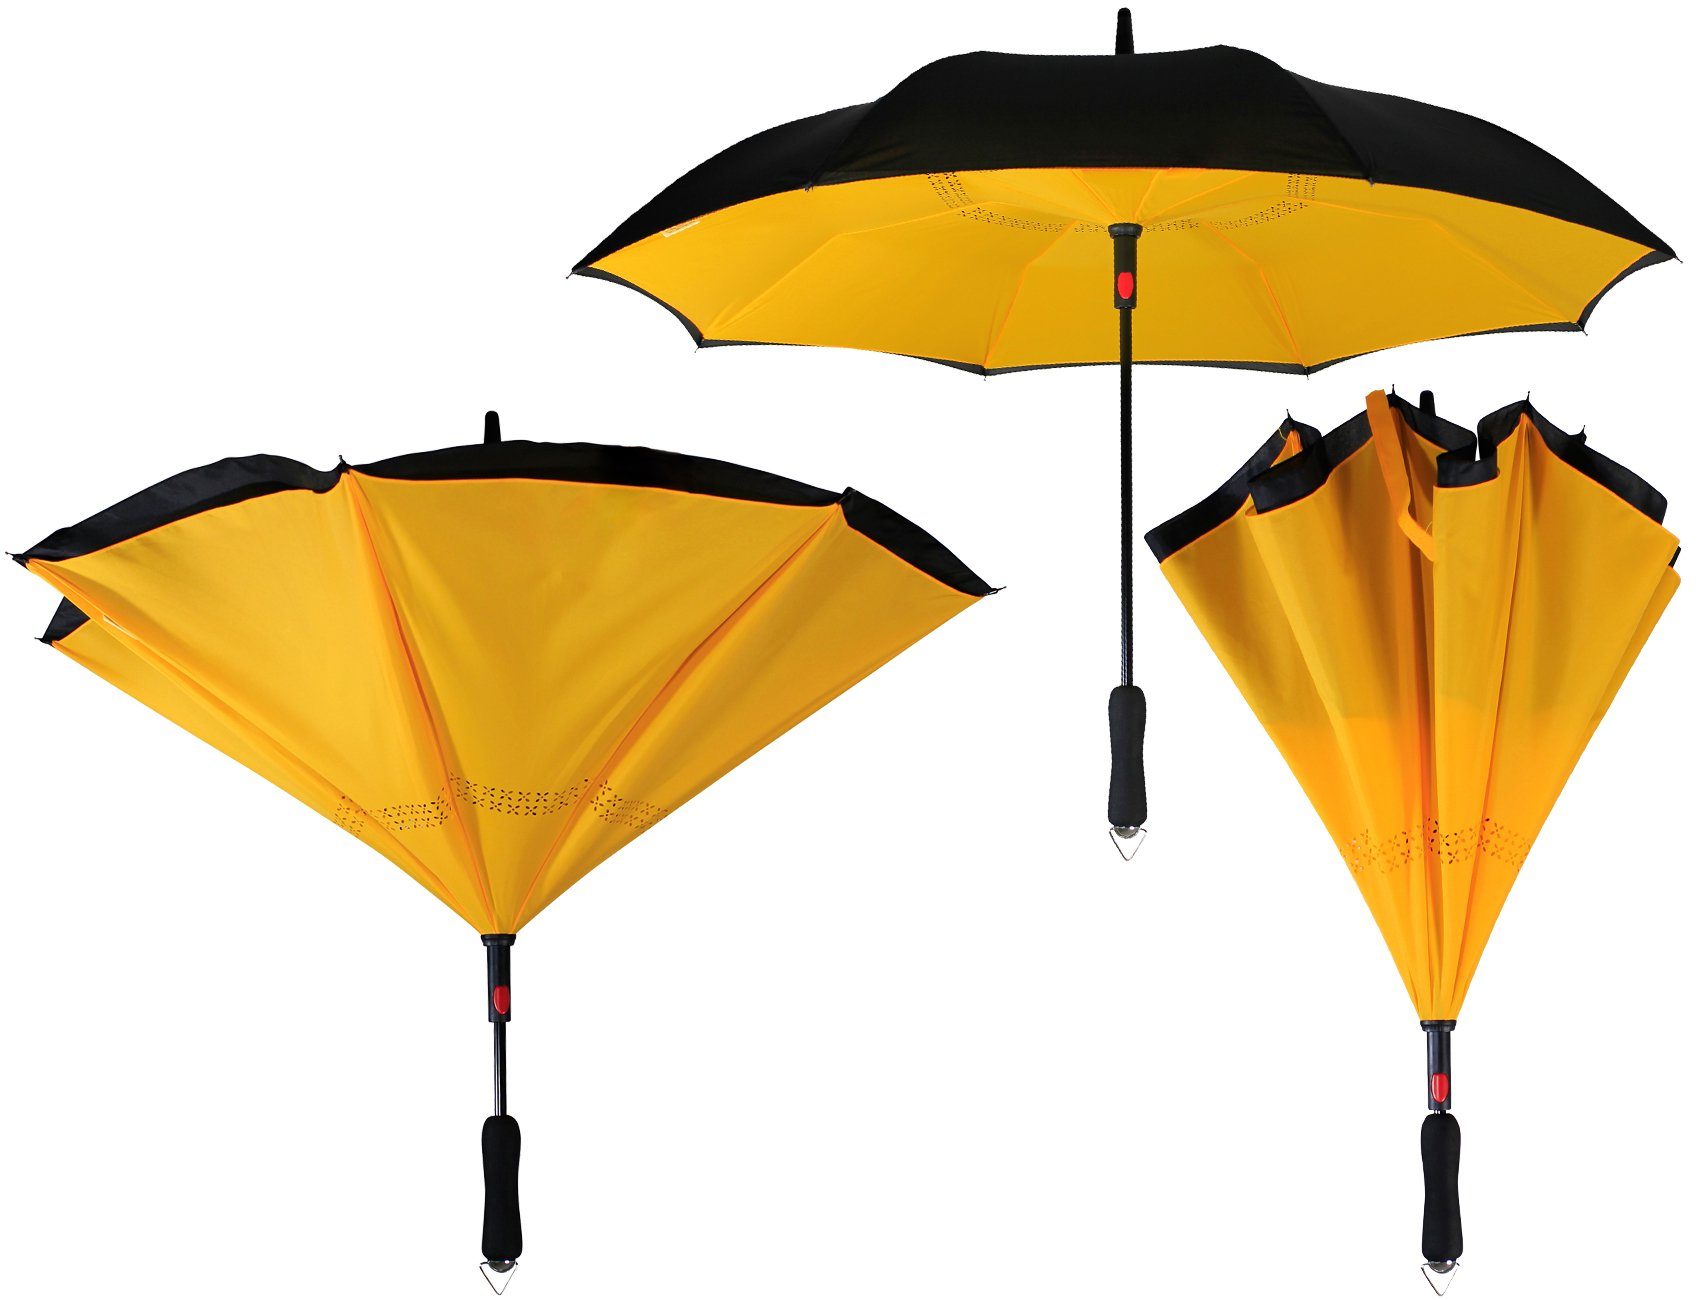 schwarz-gelb zu Automatik, - öffnen umgedreht Reverse-Schirm mit Langregenschirm iX-brella umgedreht